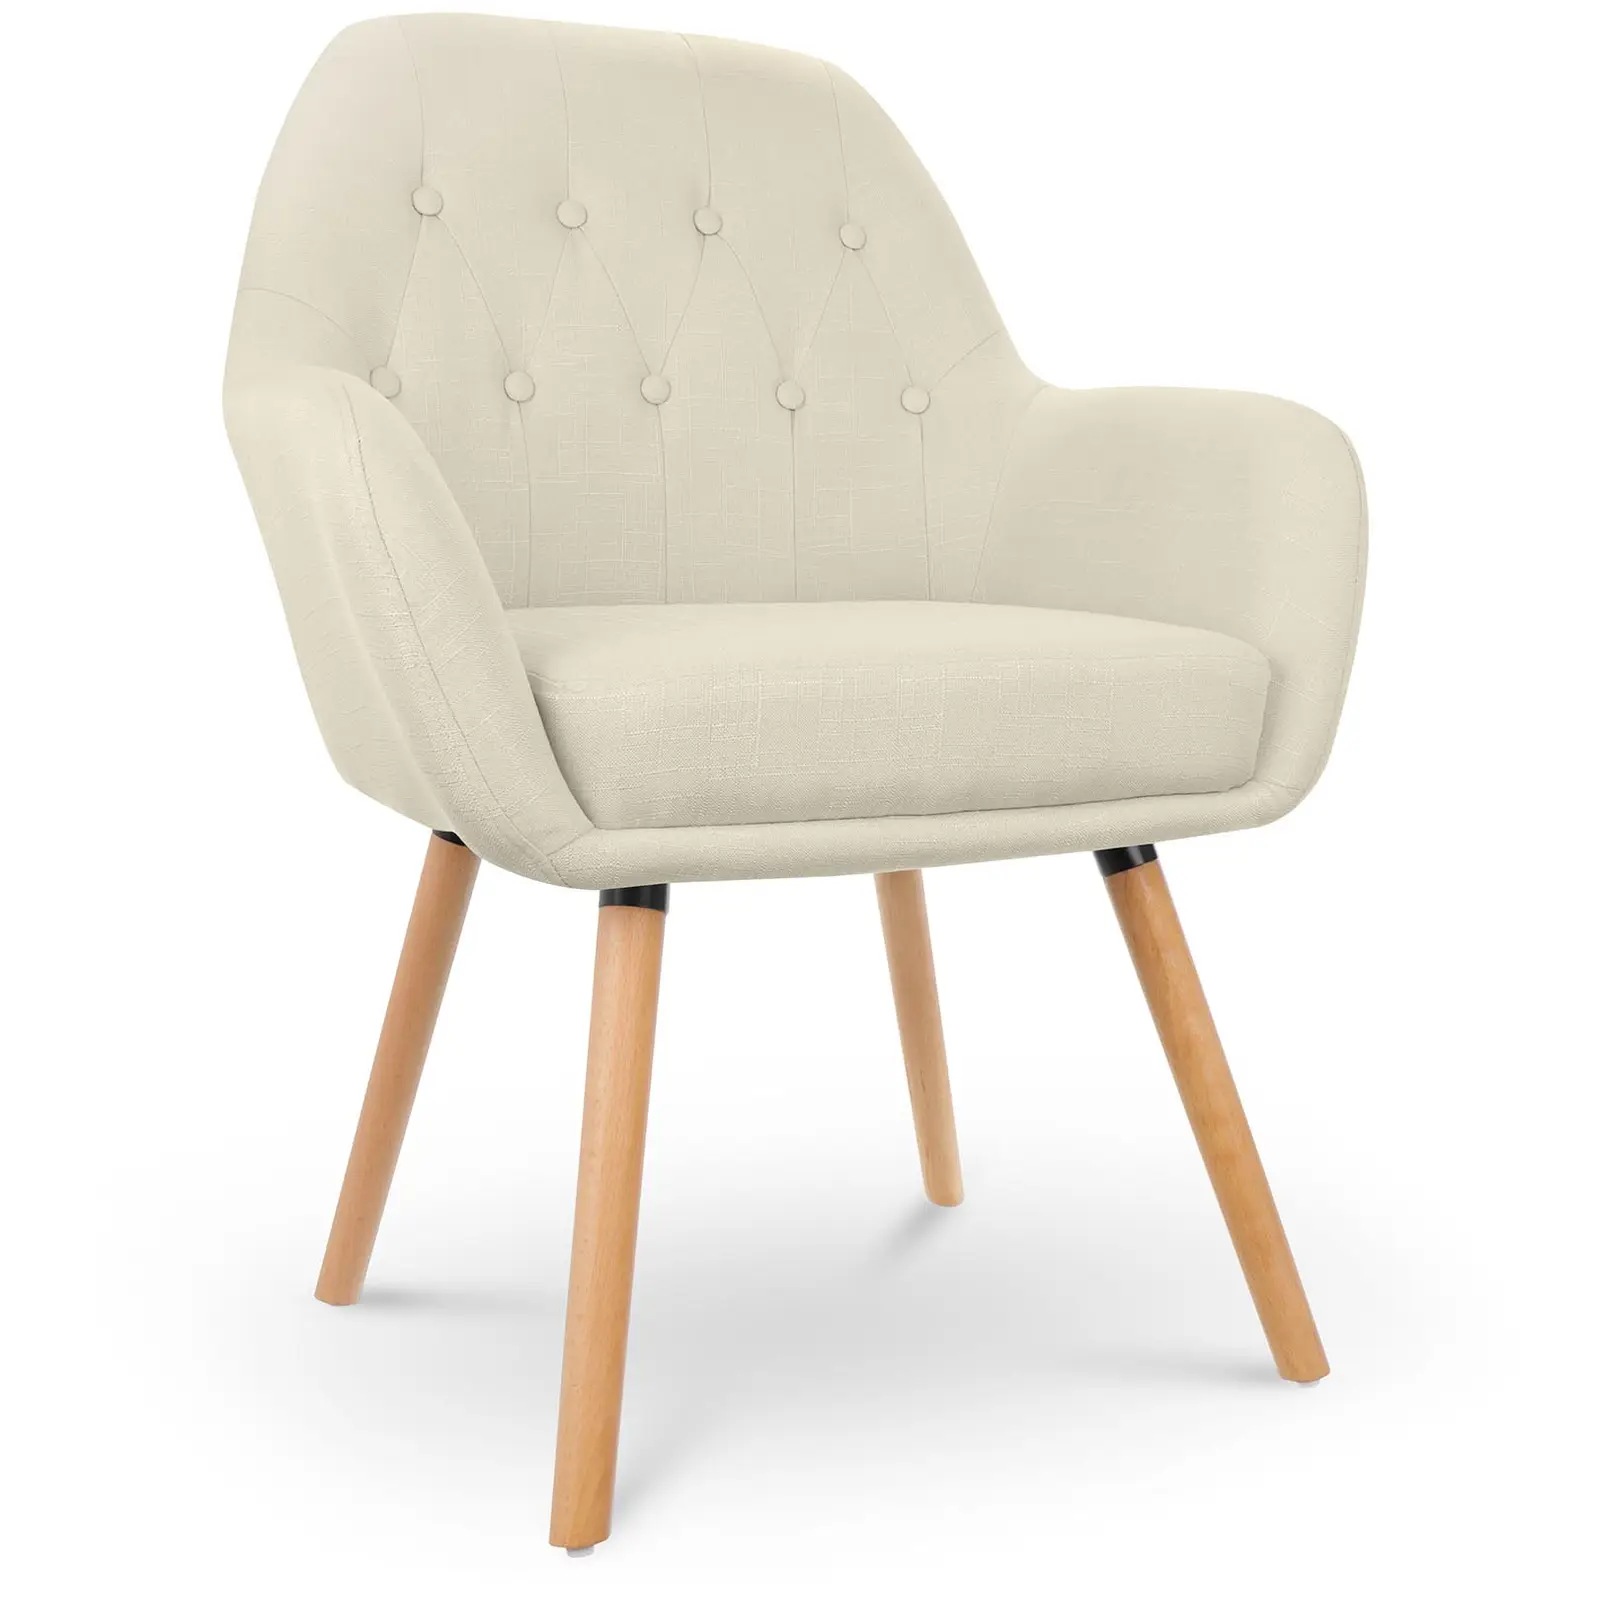 Čalouněná židle do 150 kg sedací plocha 45 x 42 cm šedá - Čalouněné židle Fromm & Starck